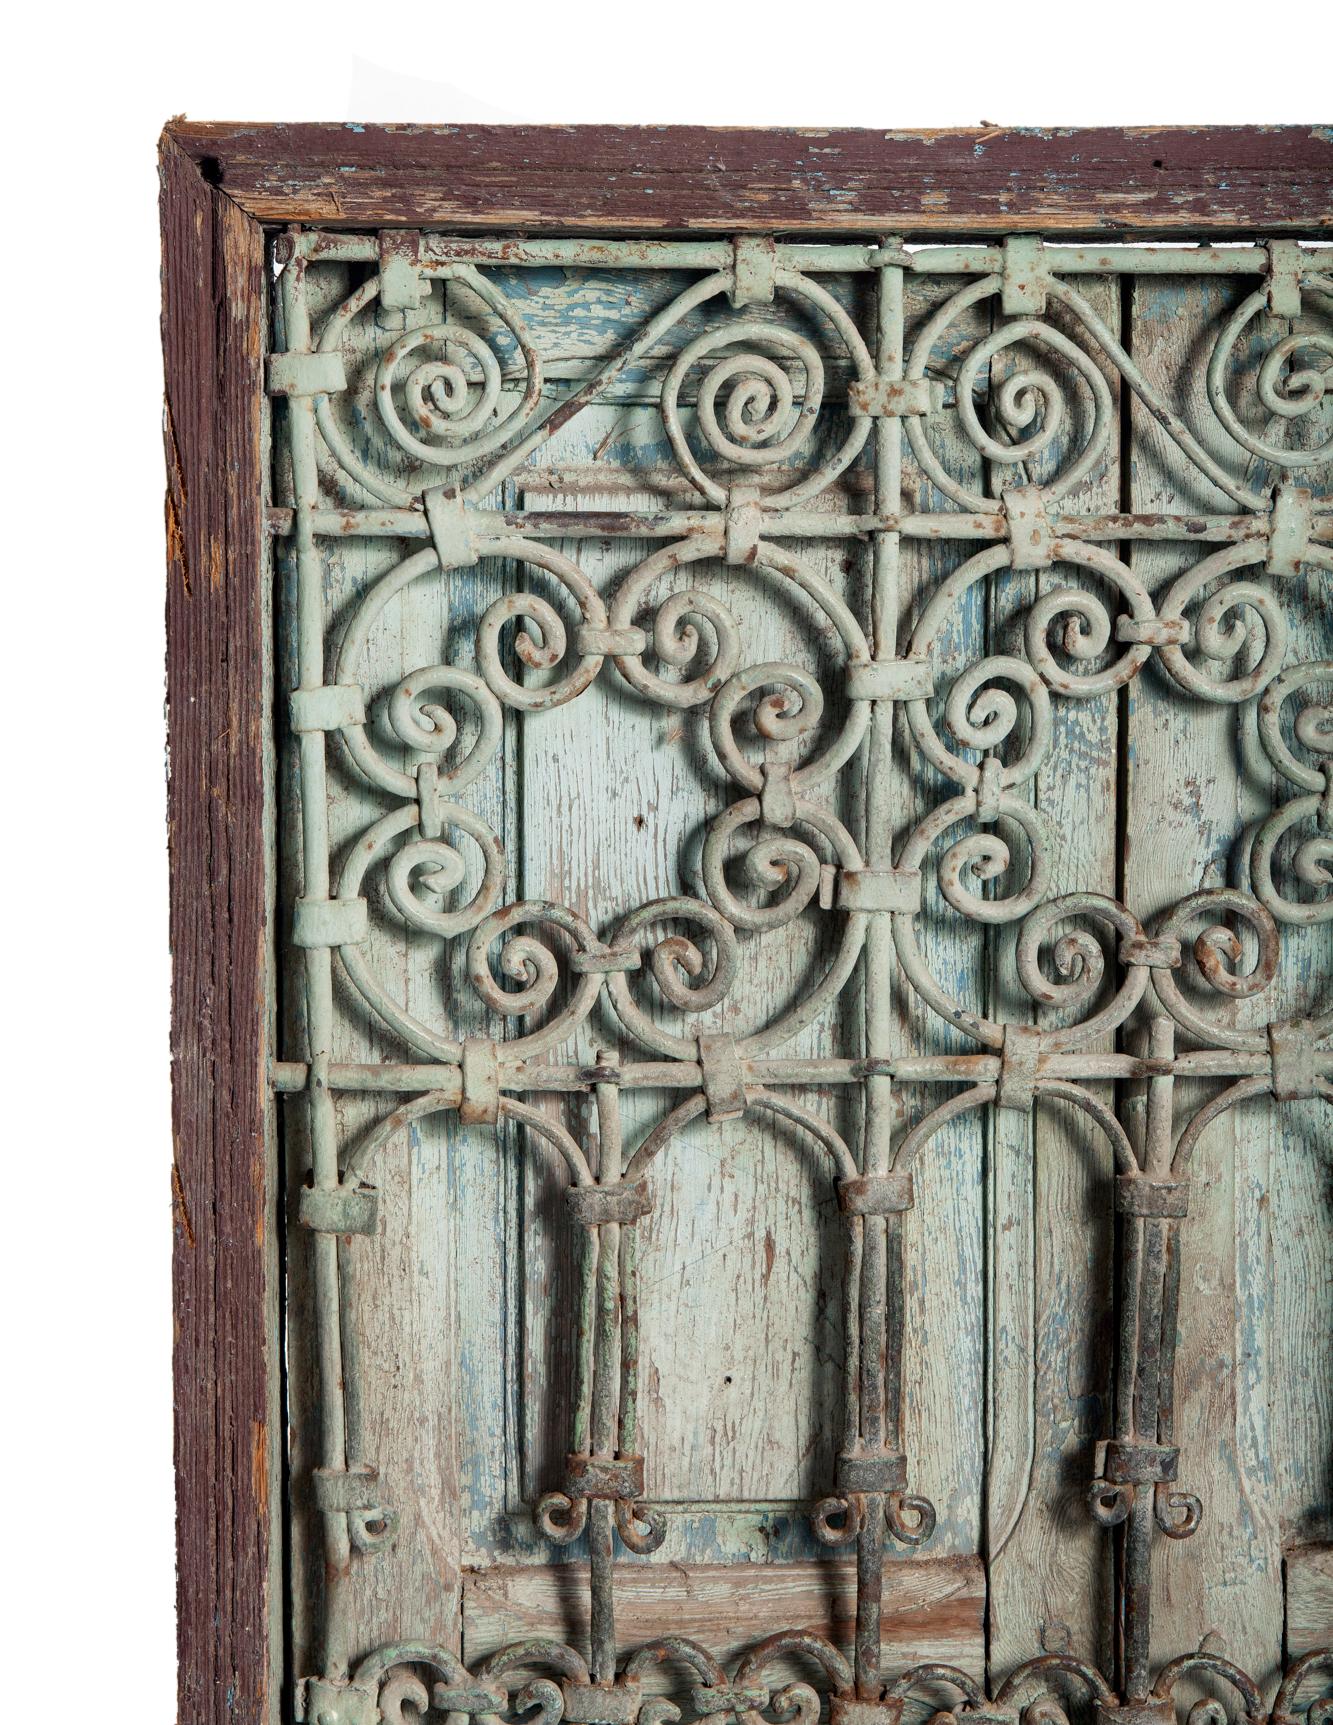 Antik und verwittert, ein marokkanisches Fenster aus dem frühen 19. Jahrhundert mit den ursprünglichen Fensterläden. Blassgrüne verwitterte Patina auf dem handgeschmiedeten Eisen aus den frühen 1800er Jahren.
hat noch die alte Farbe im